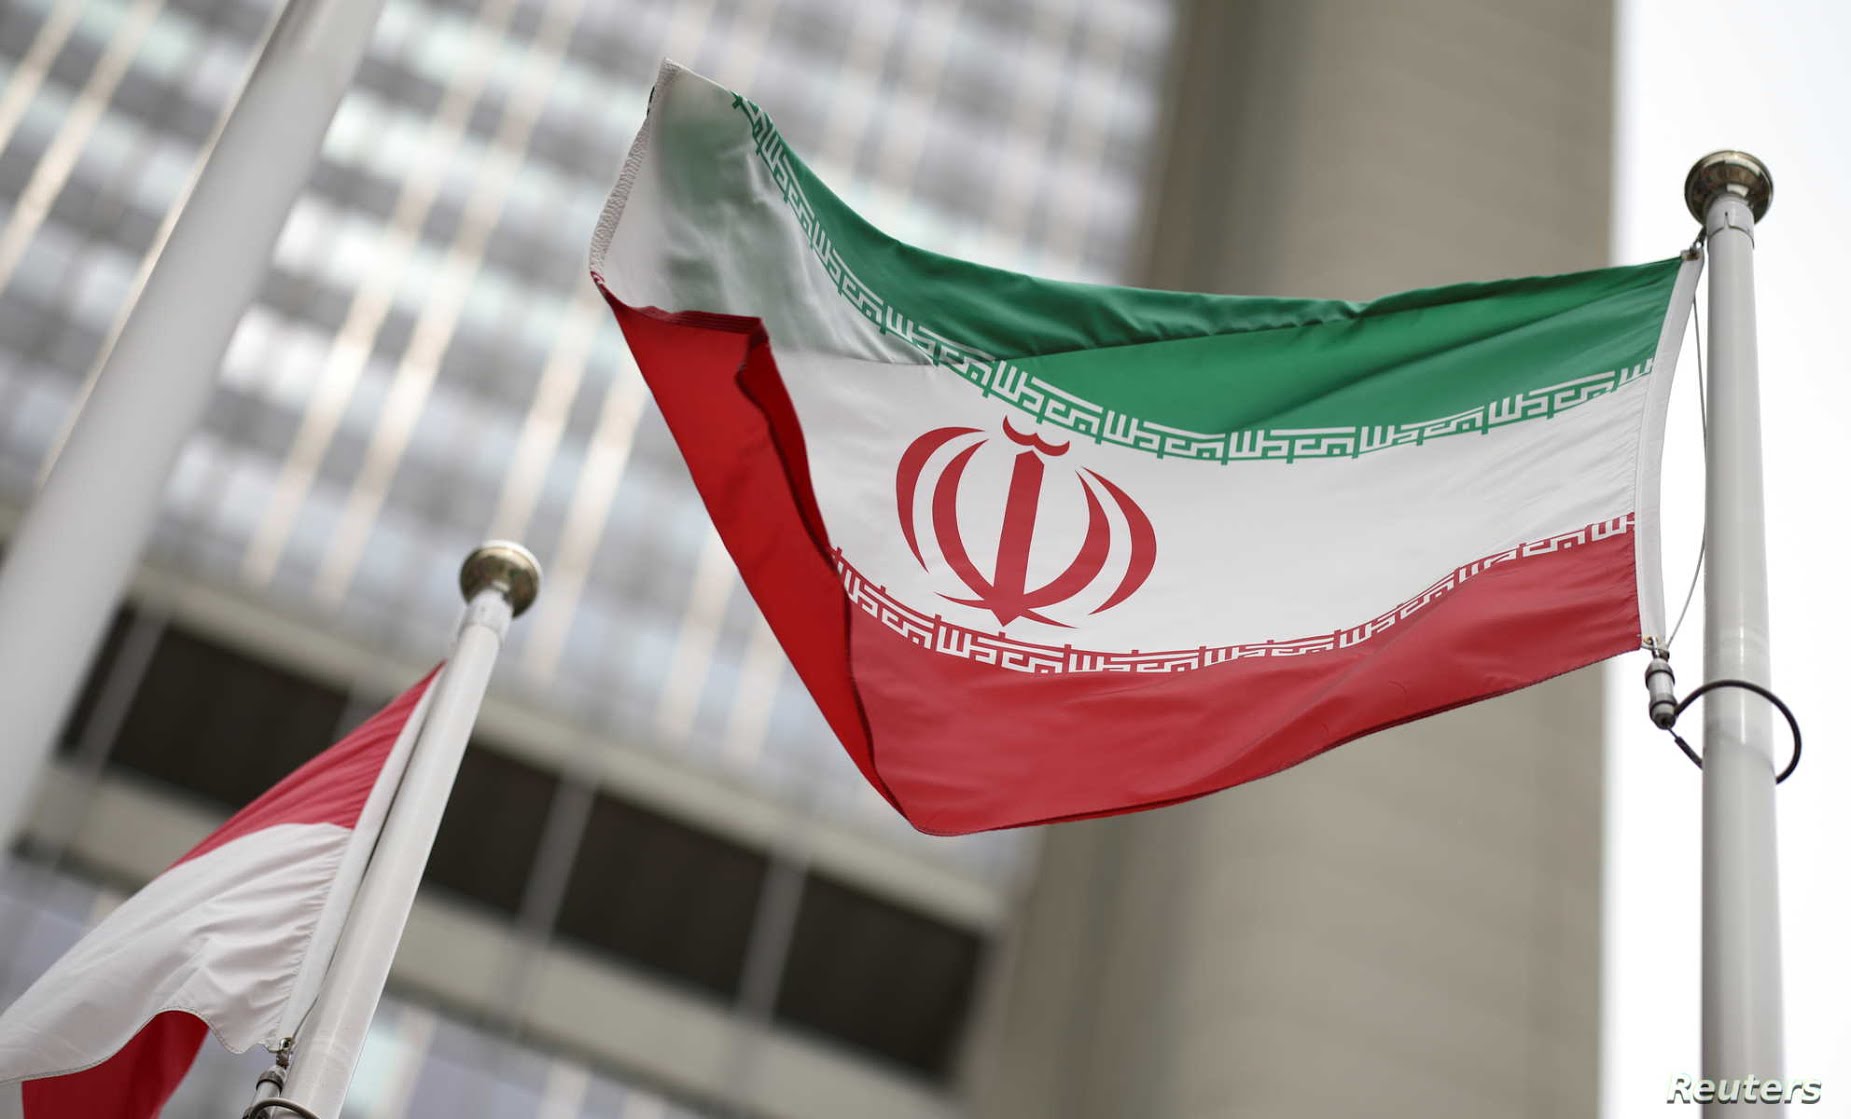  إيران تخصب اليورانيوم بنسبة تزيد عن 60% : الغرب قلق وايران تنفي